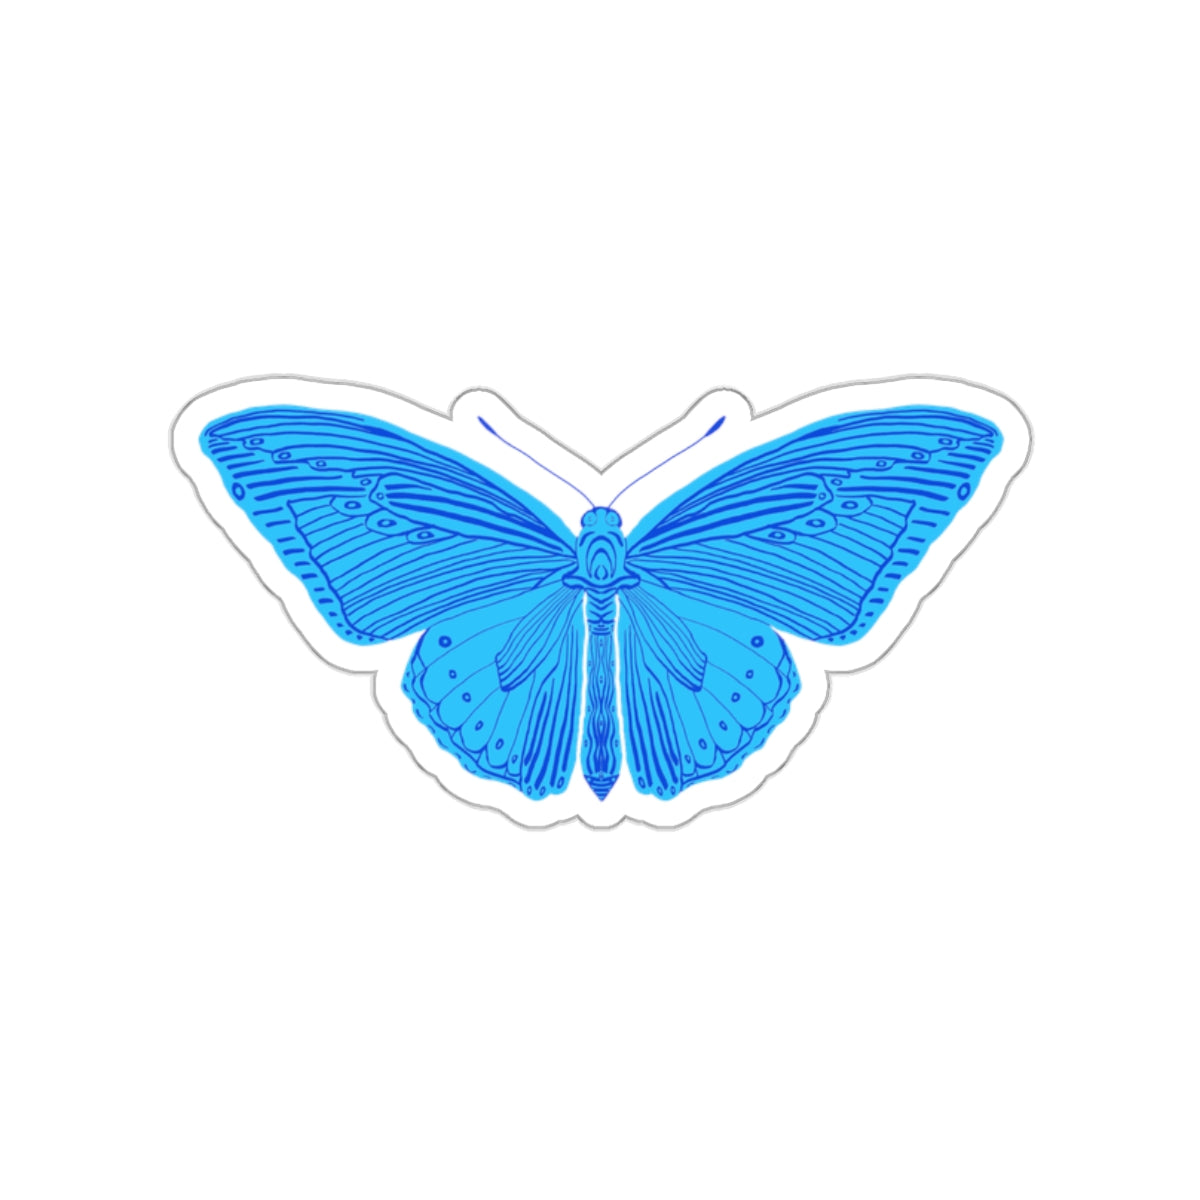 Block Print Style Butterfly in Blue Die Cut Sticker